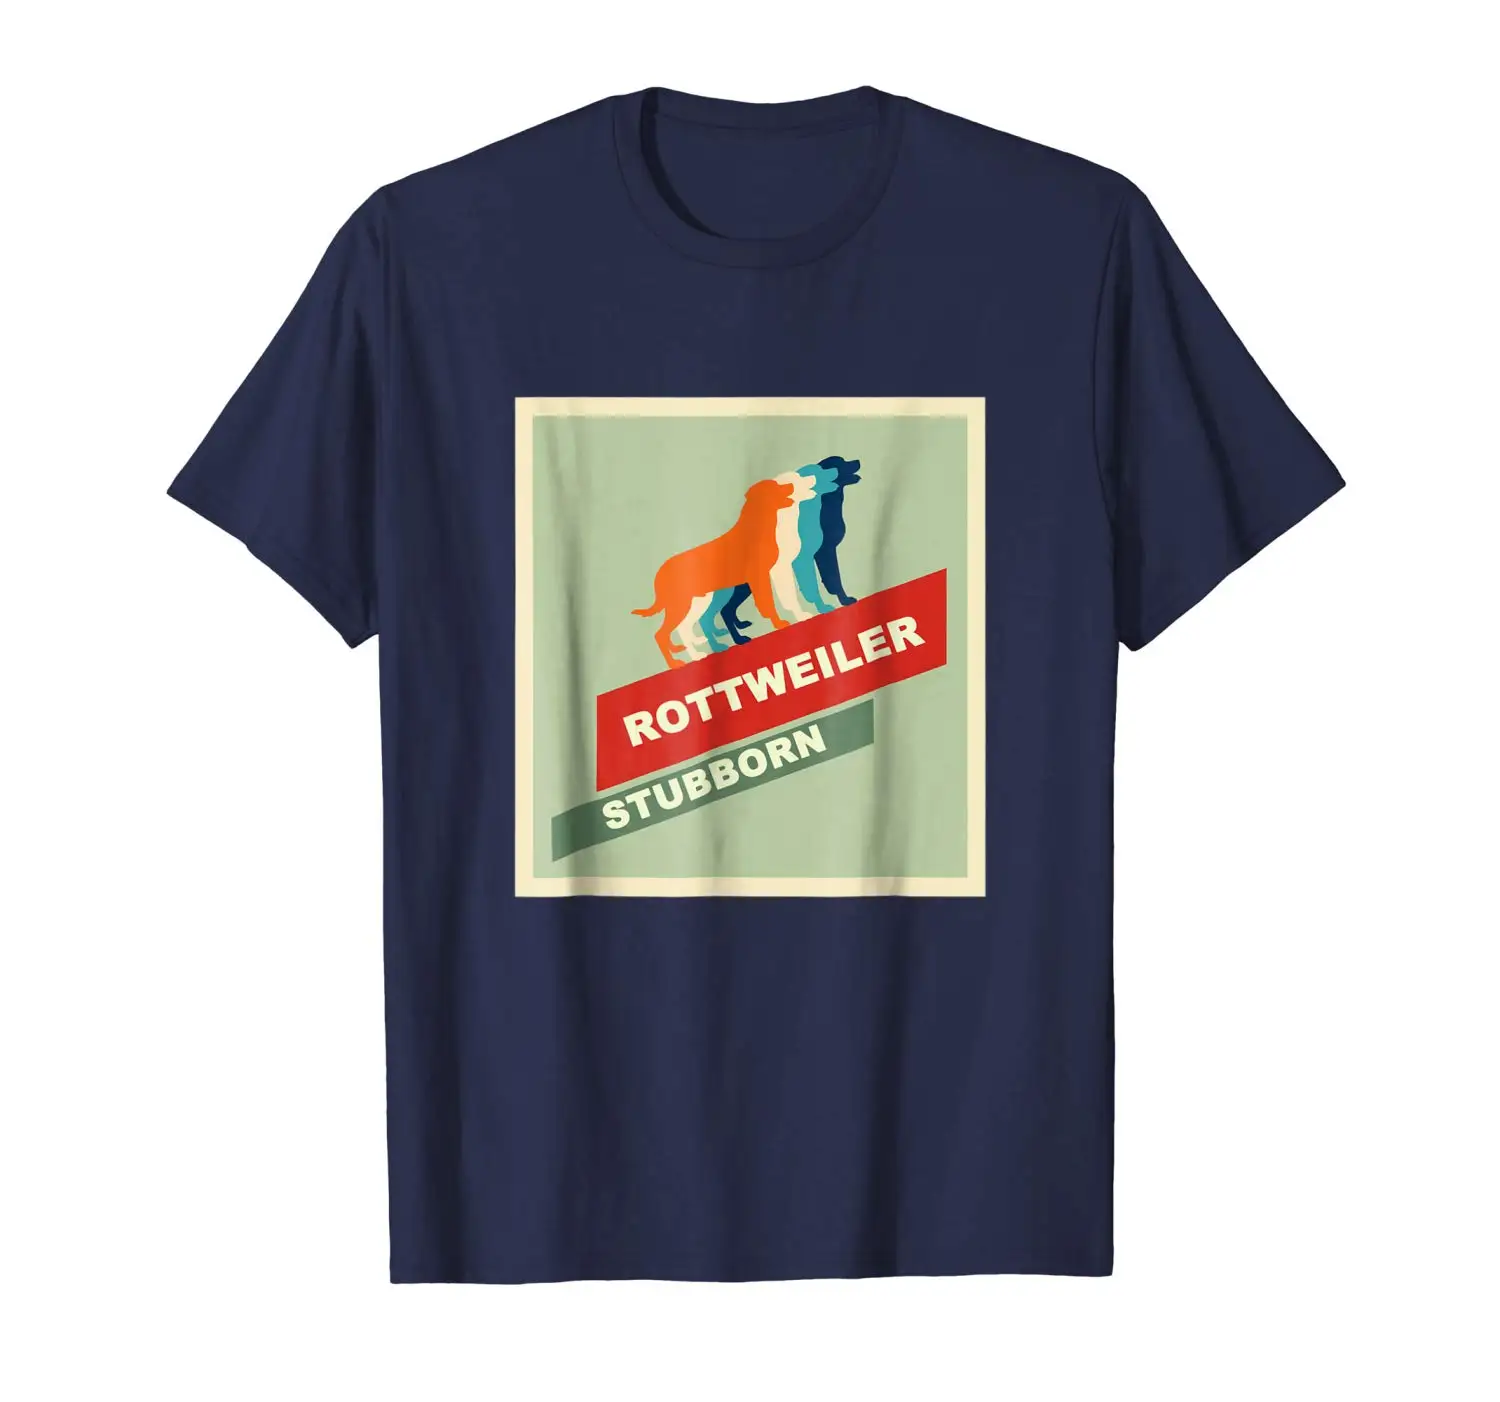 Винтаж Дизайн Ротвейлер Футболка с принтом Футболка для мальчиков топ, футболка, рубашка хлопок топы, футболки мужской Батарея забавные